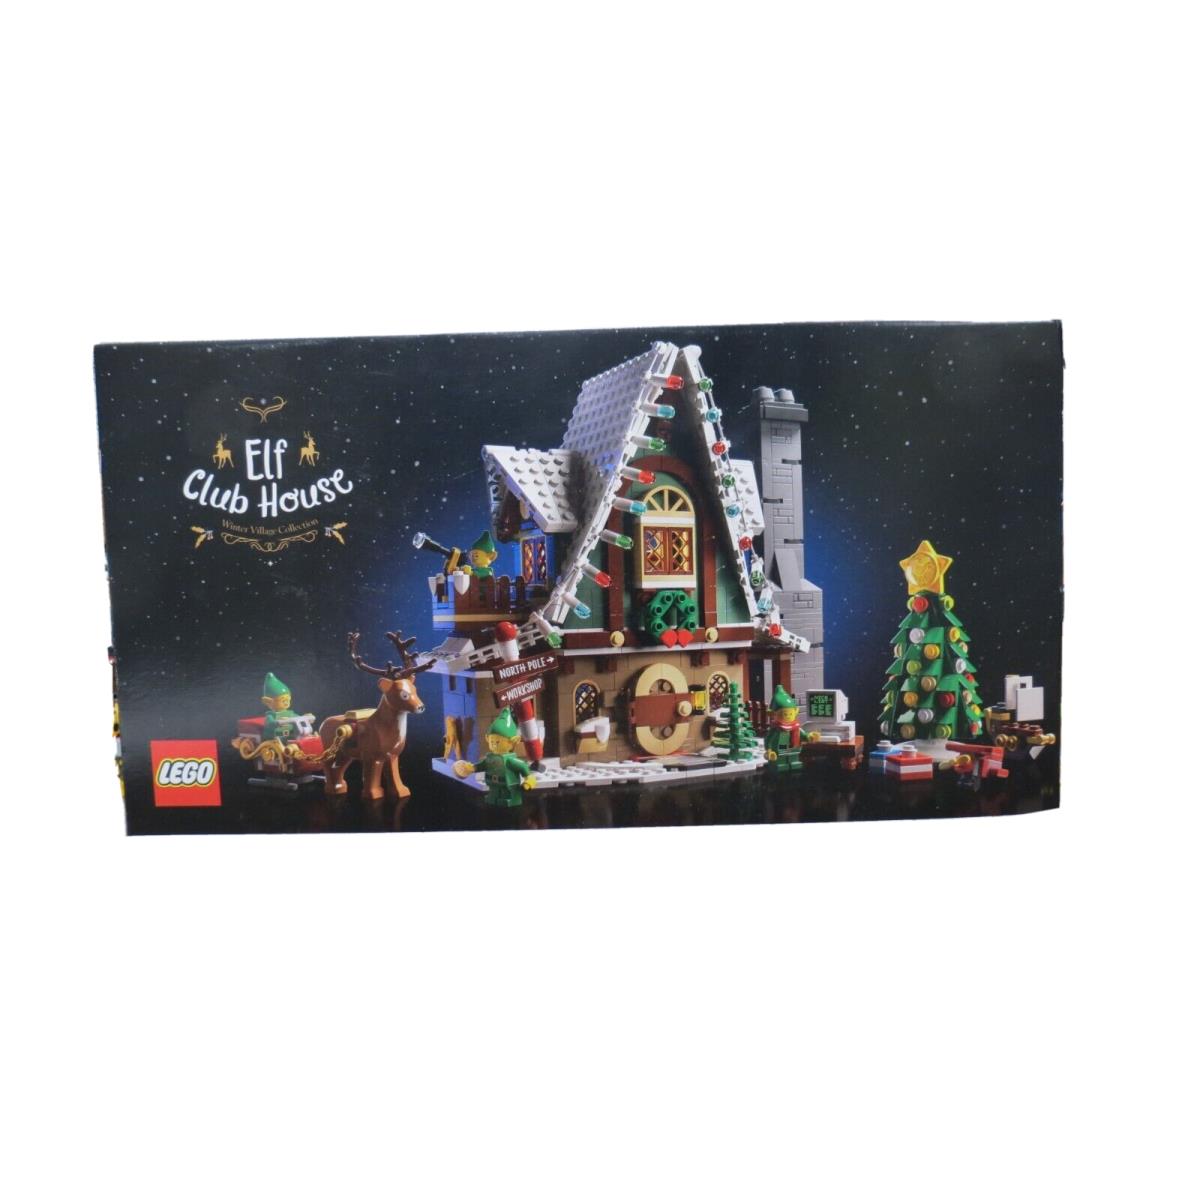 Lego 10275 Elf Club House Winter Village Collection 1197 Pcs Building Set